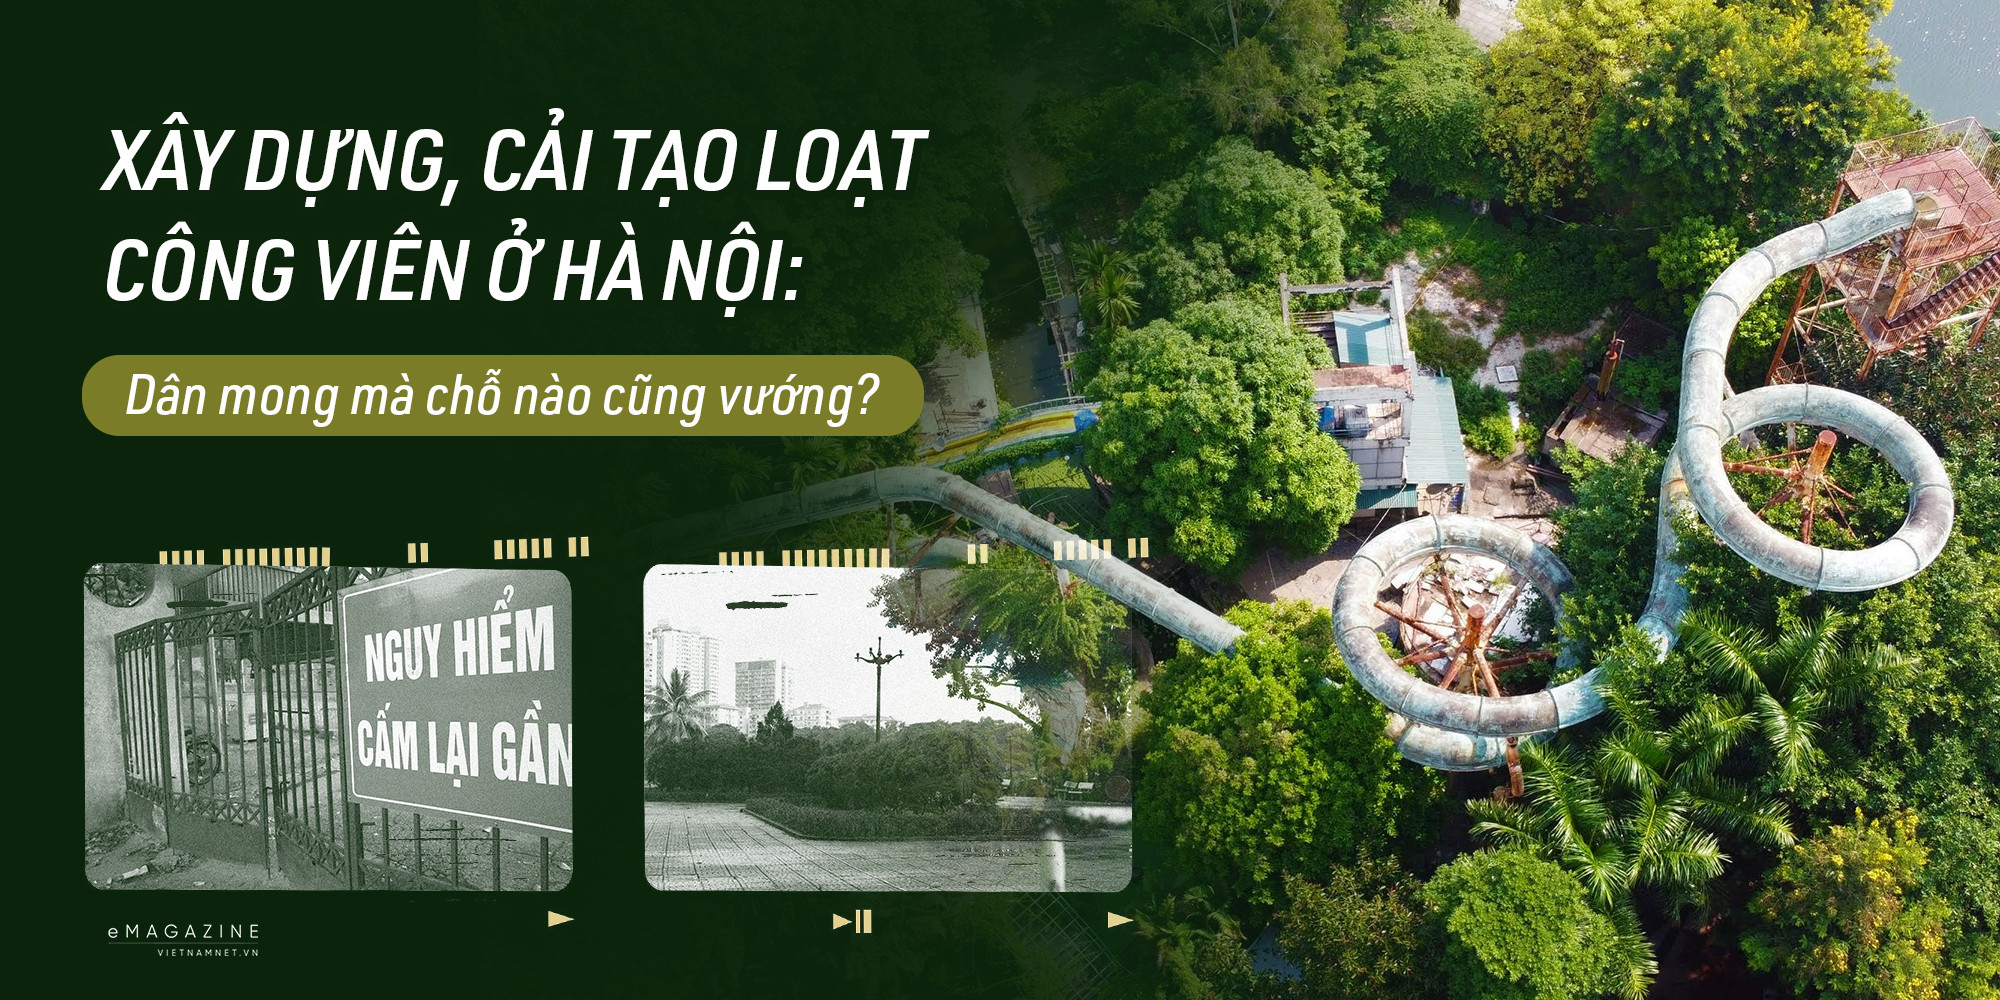 Xây dựng, cải tạo loạt công viên ở Hà Nội: Dân mong mà chỗ nào cũng vướng?